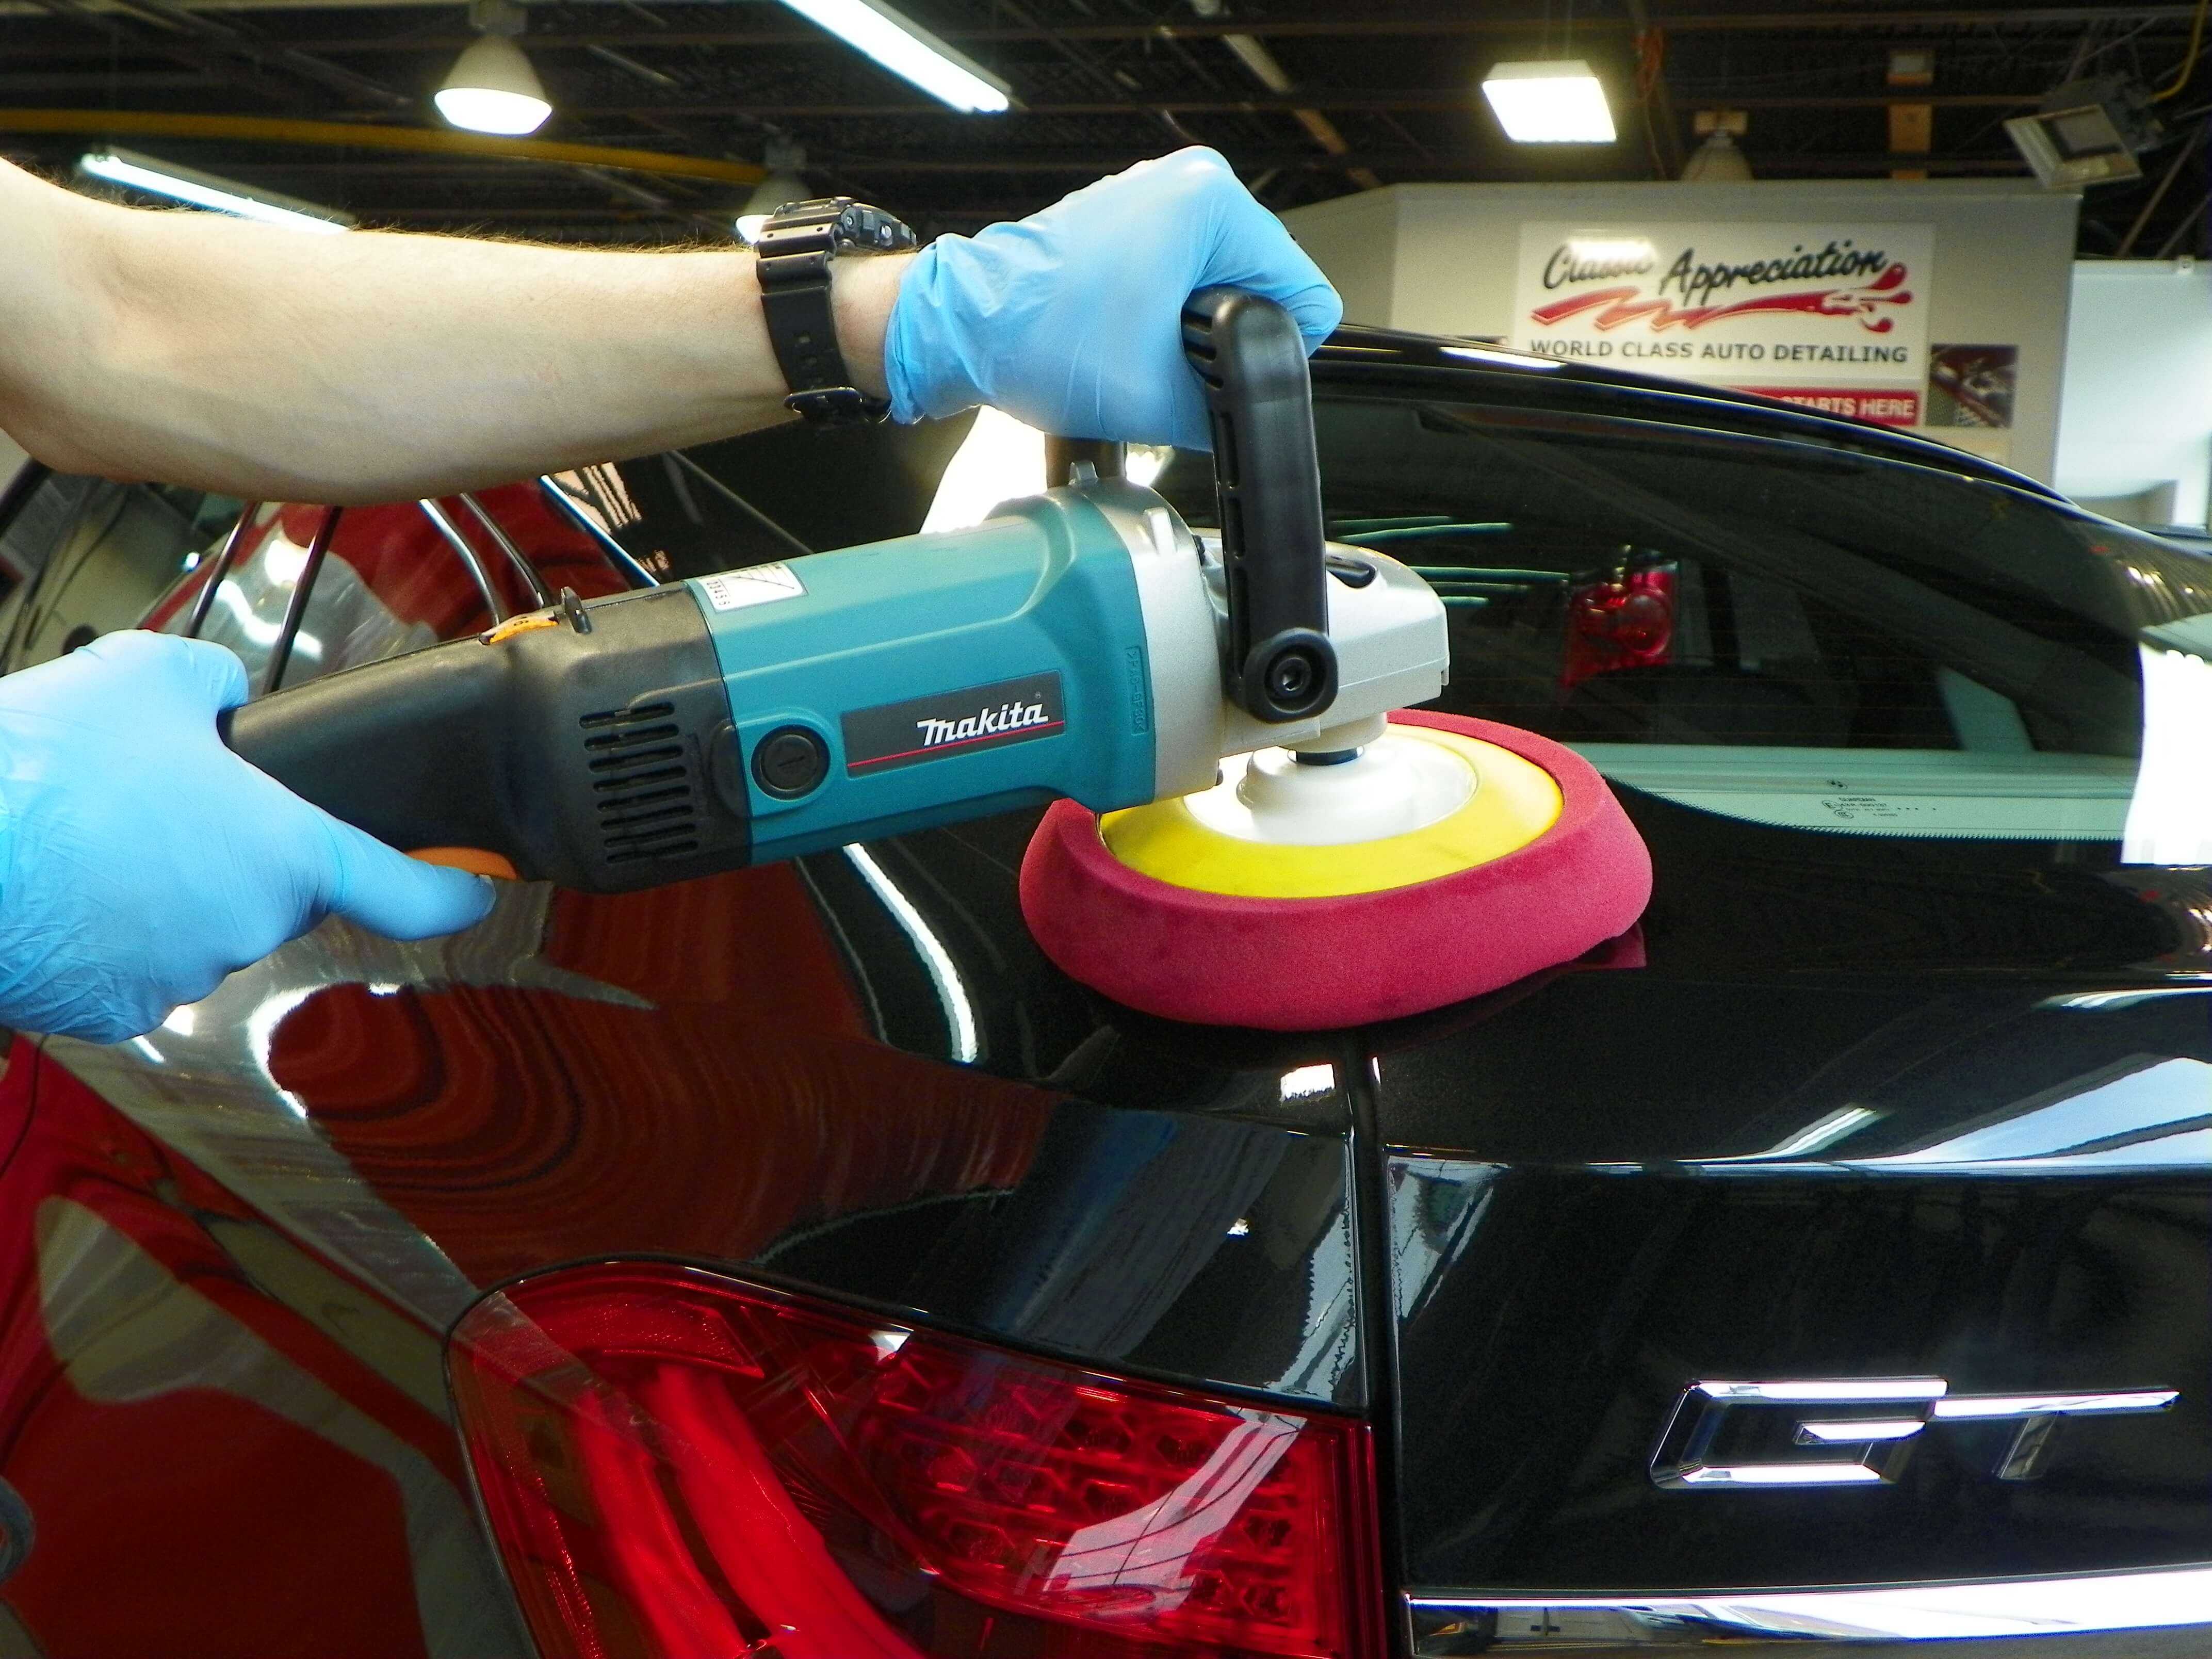 Полировка кузова автомобиля своими руками - как правильно и профессионально полировать машину